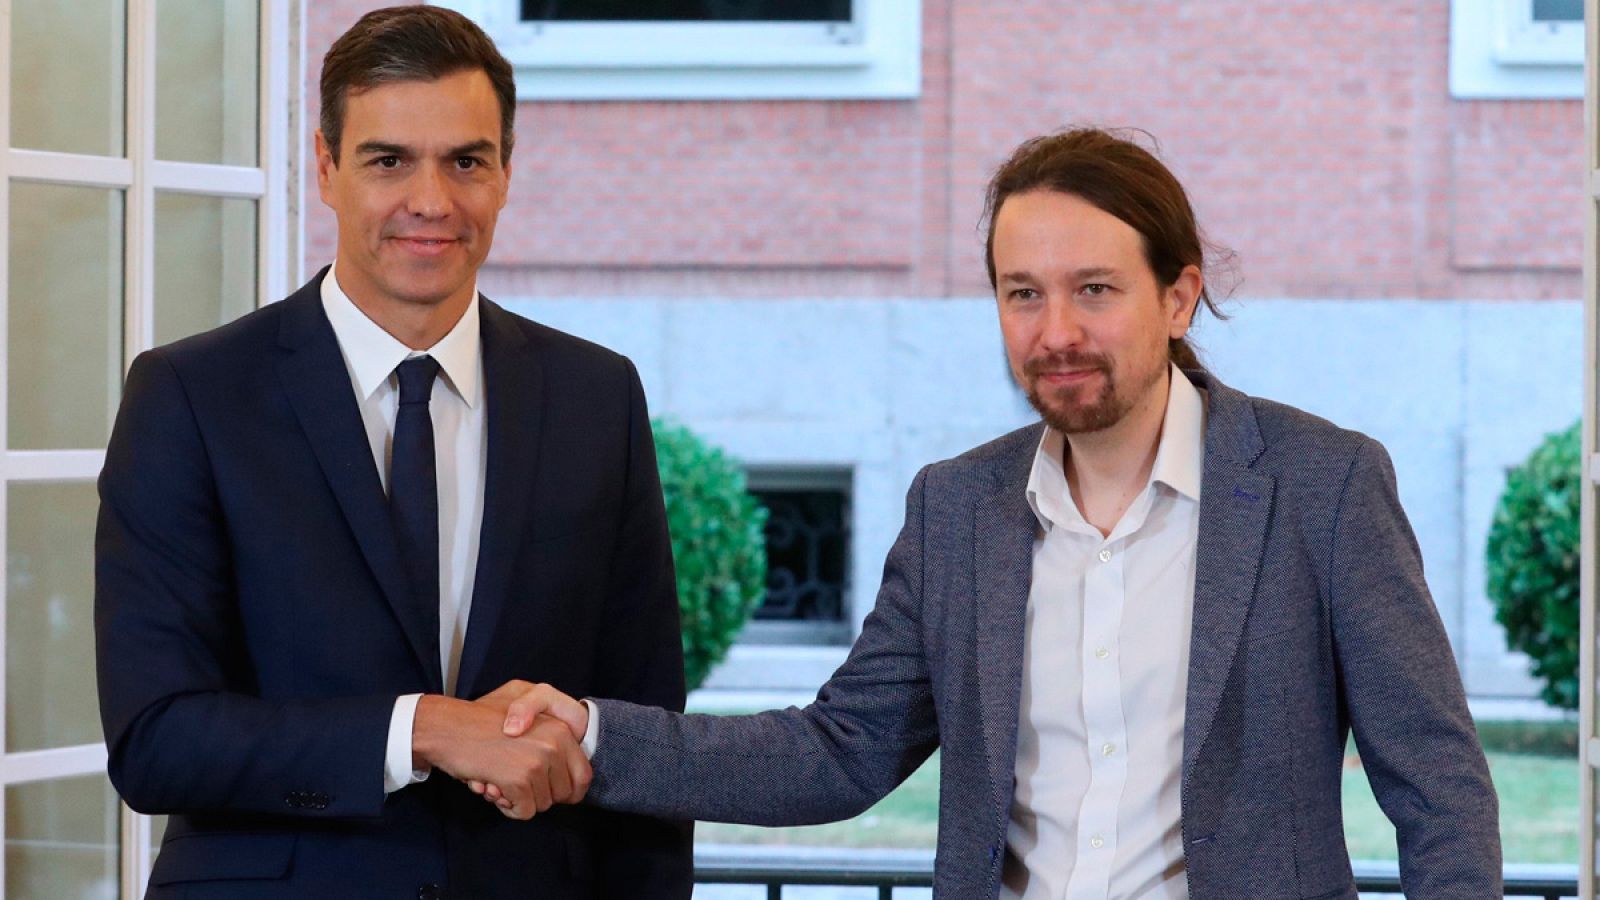 Presupuestos 2019 | Sánchez e Iglesias firman el acuerdo en Moncloa